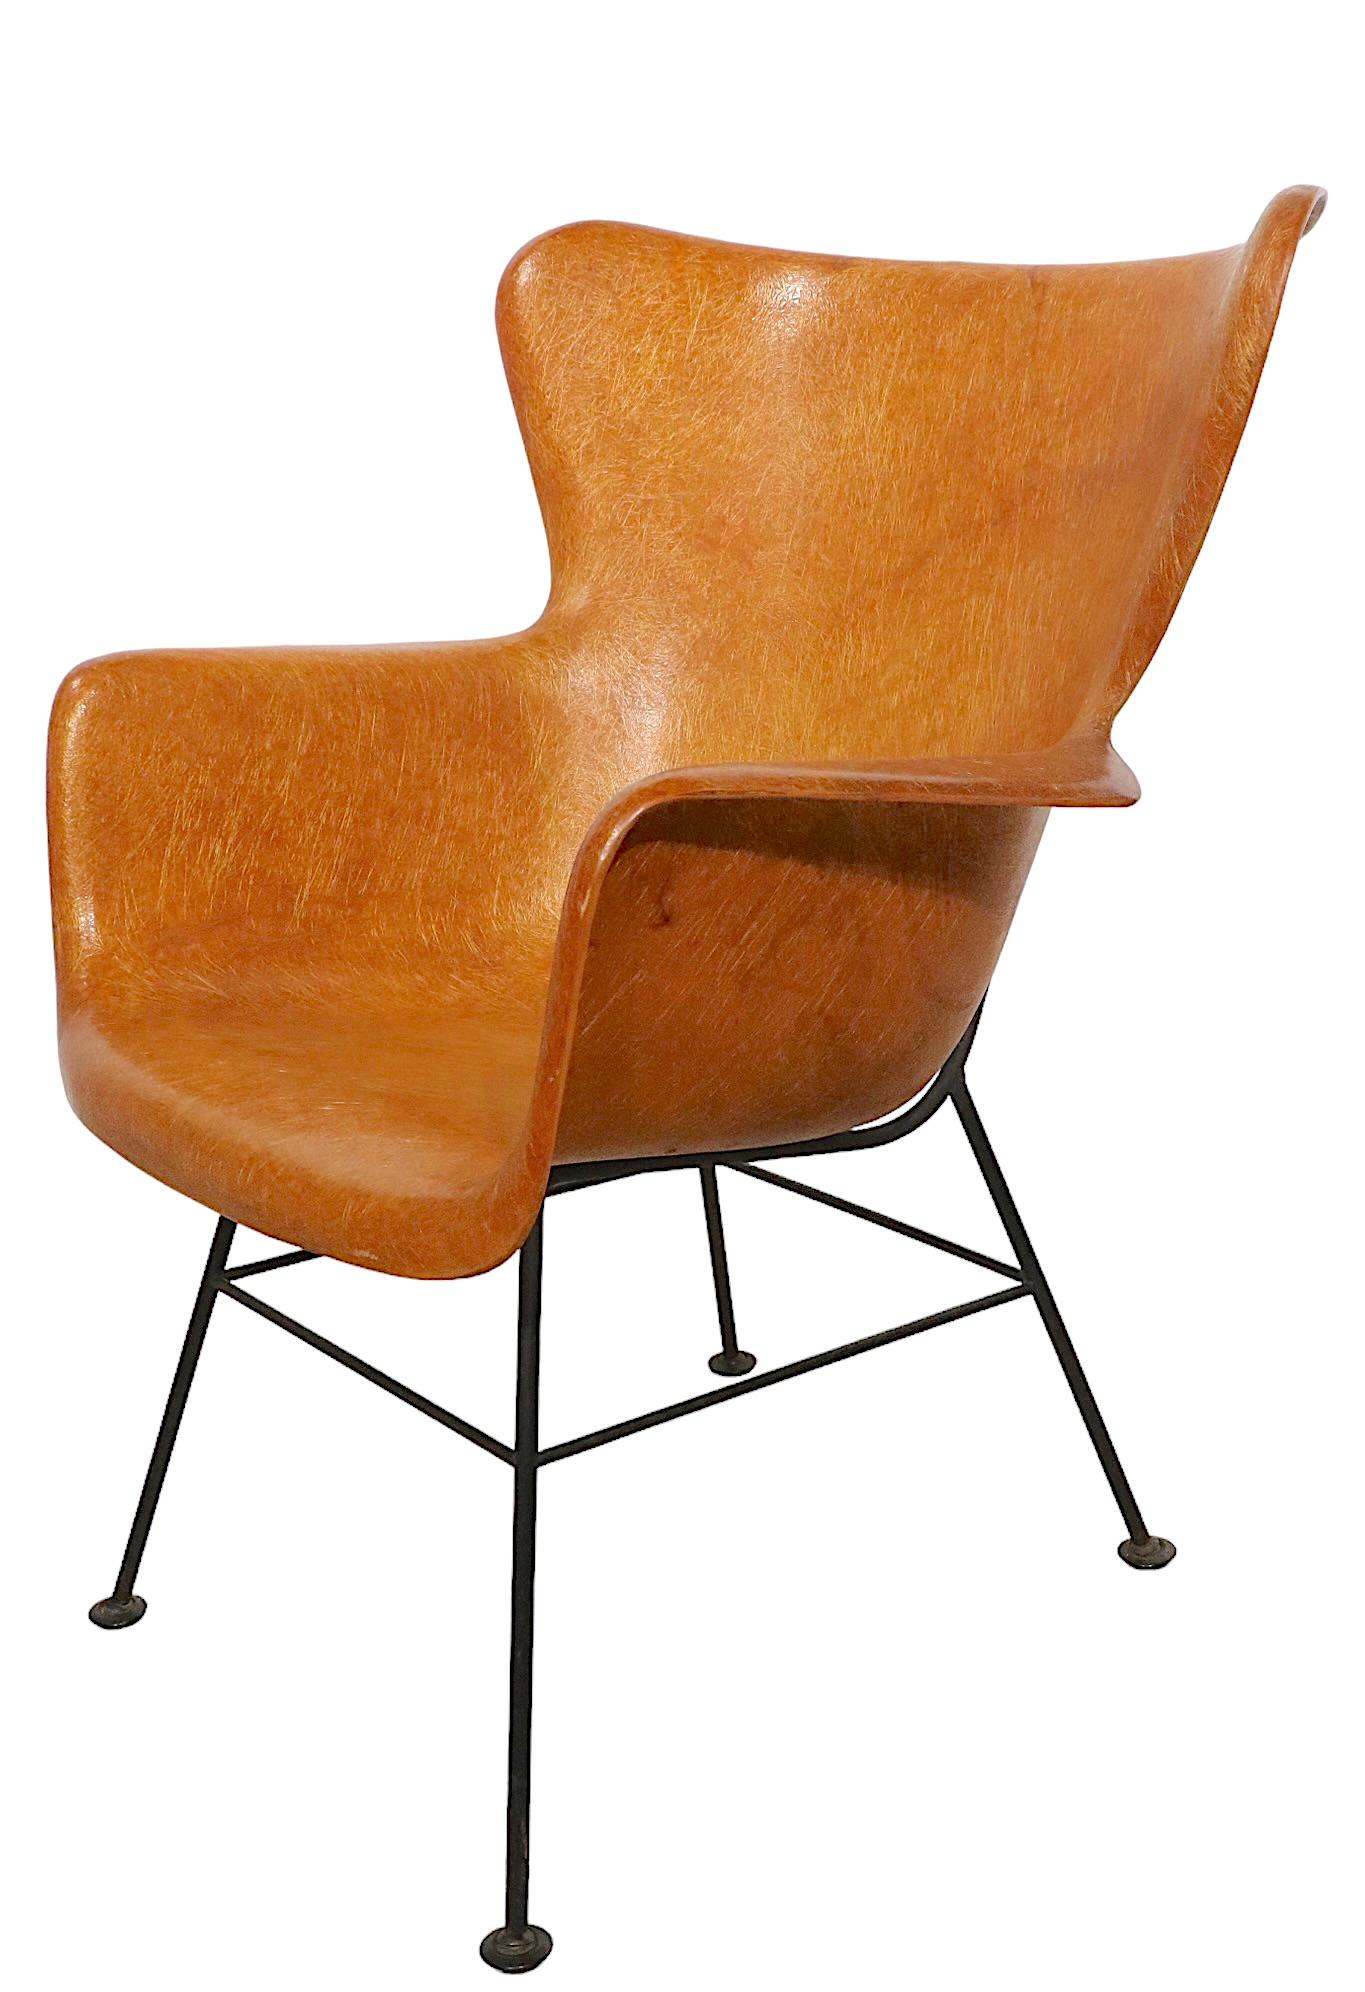 Réinterprétation moderniste iconique en fibre de verre et fer forgé de la forme classique du fauteuil à oreilles, conçu par Lawerence Peabody, fabriqué par Selig, vers les années 1950. 
 Cet exemple est dans un état original, intact et vintage, ne